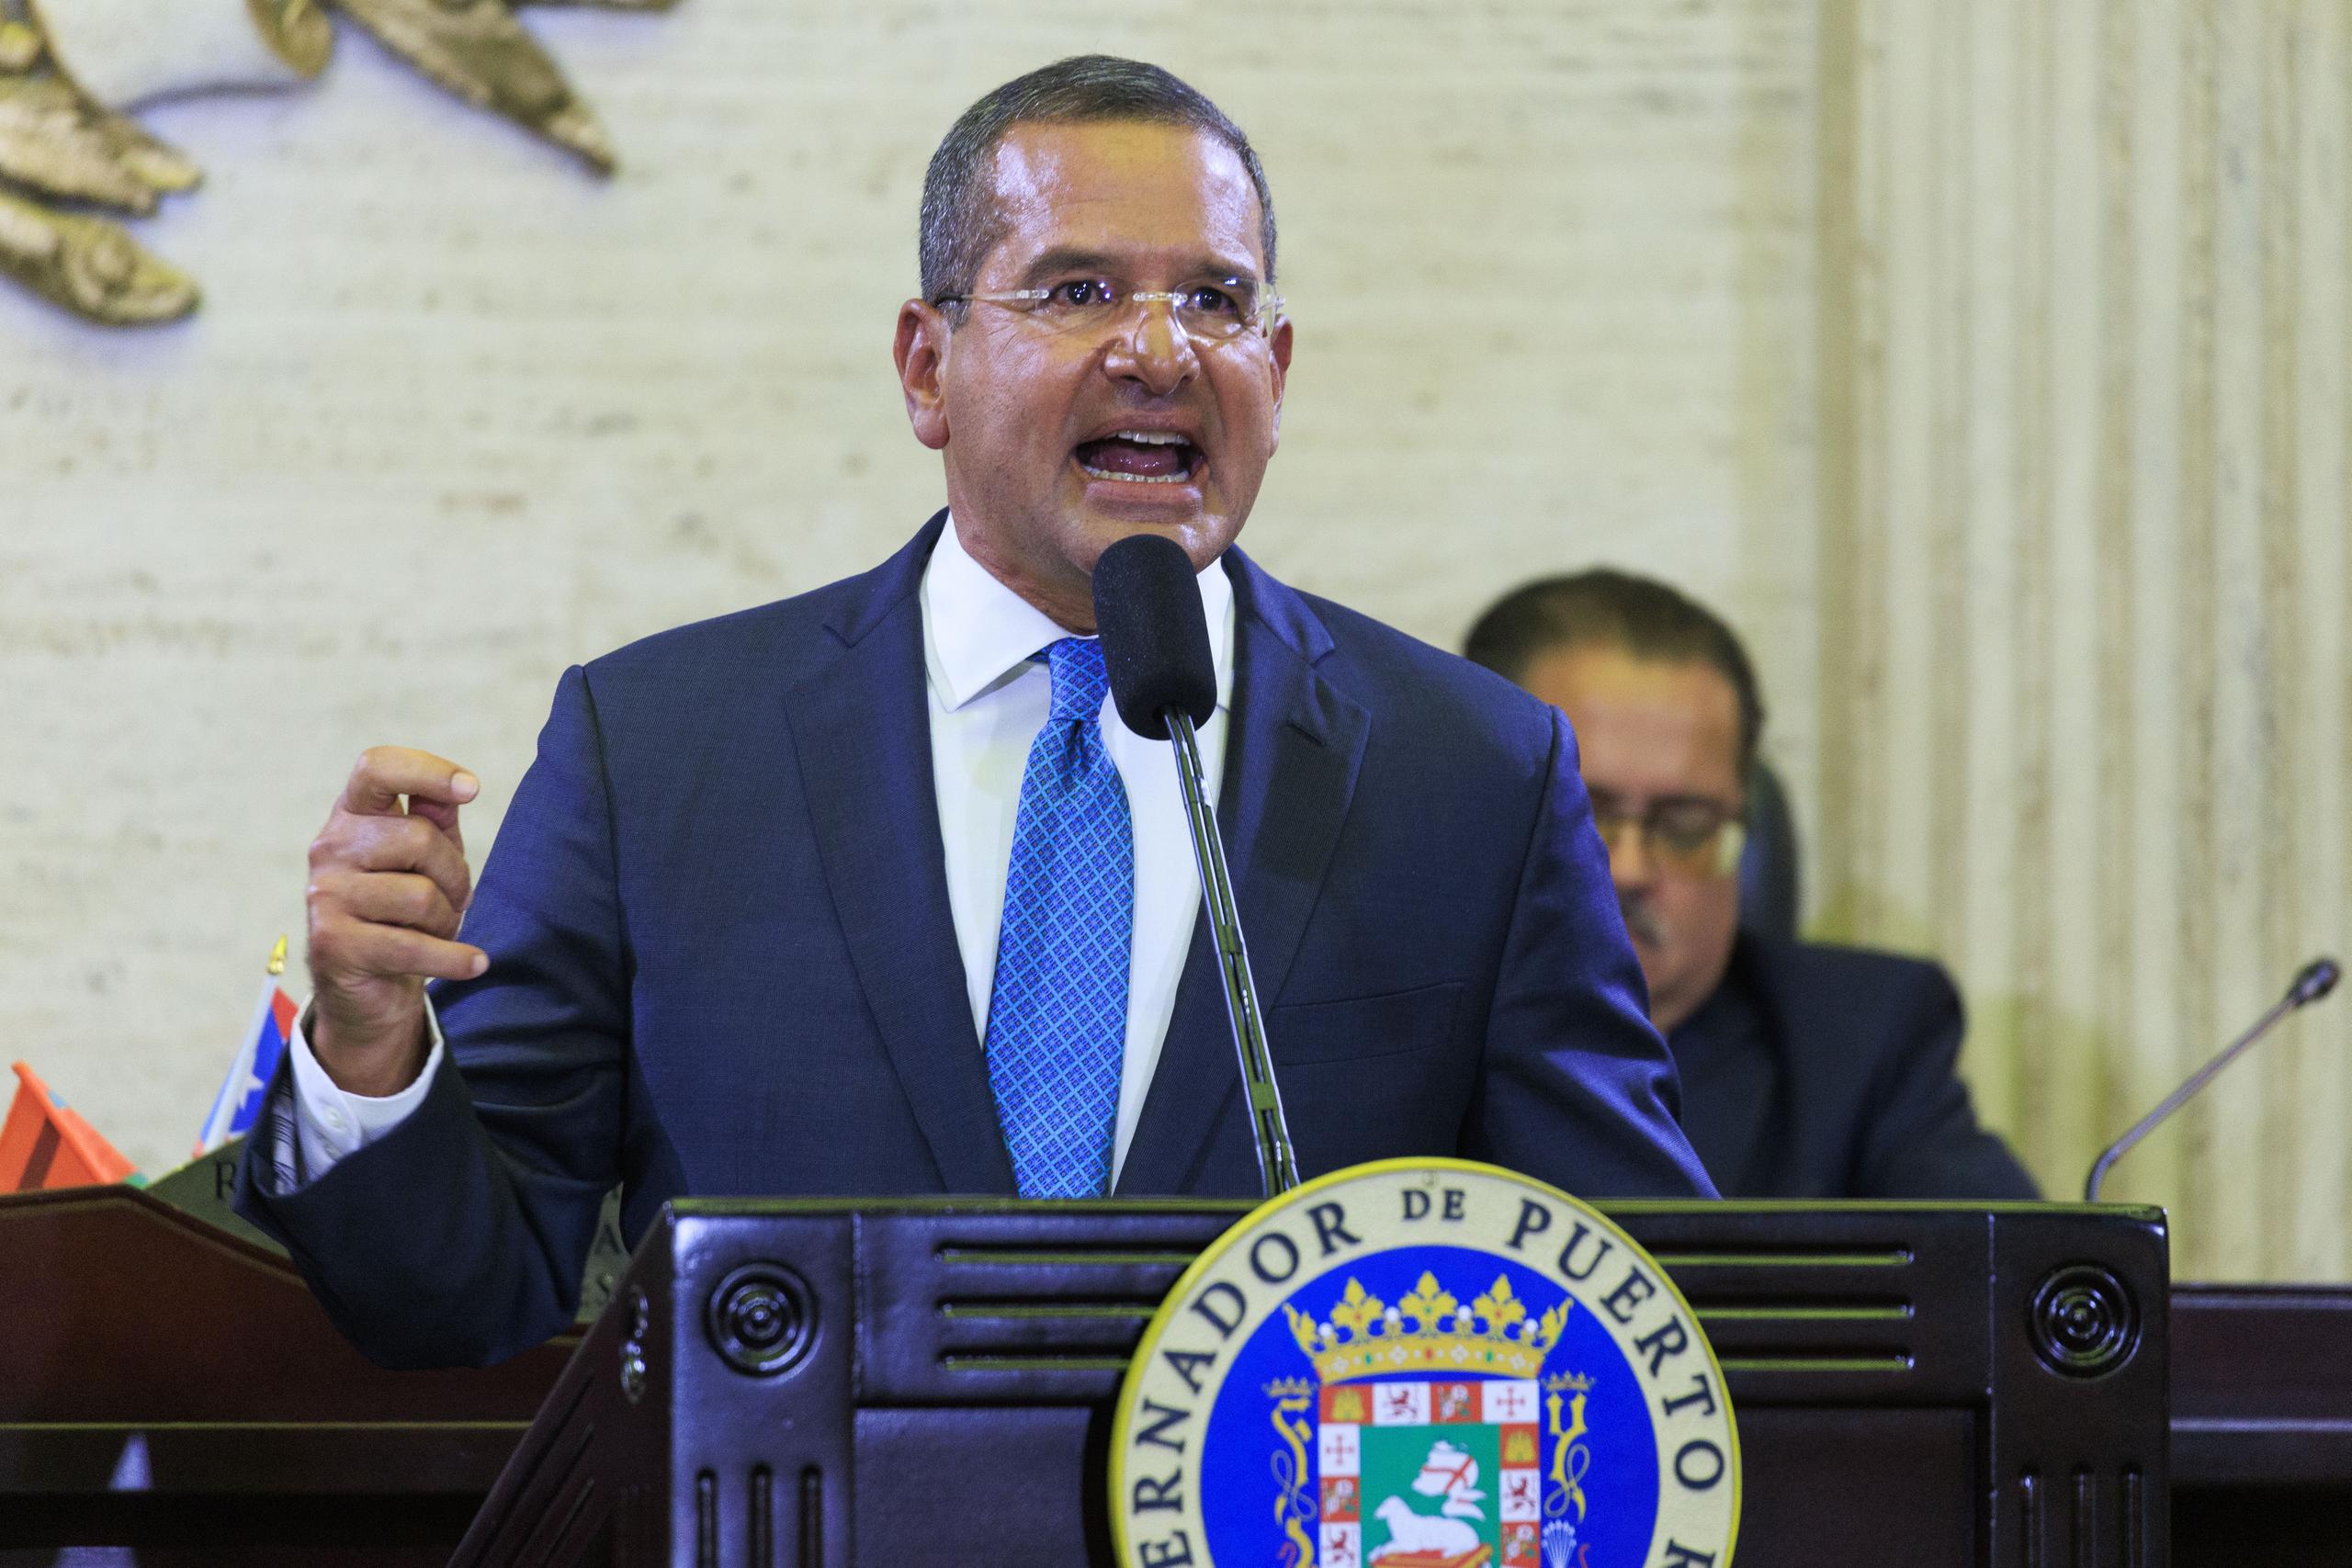 Pedro Pierluisi en el hemiciclo de la Cámara de Representantes en el Capitolio, durante el Mensaje de Situación del Estado del pasado año.